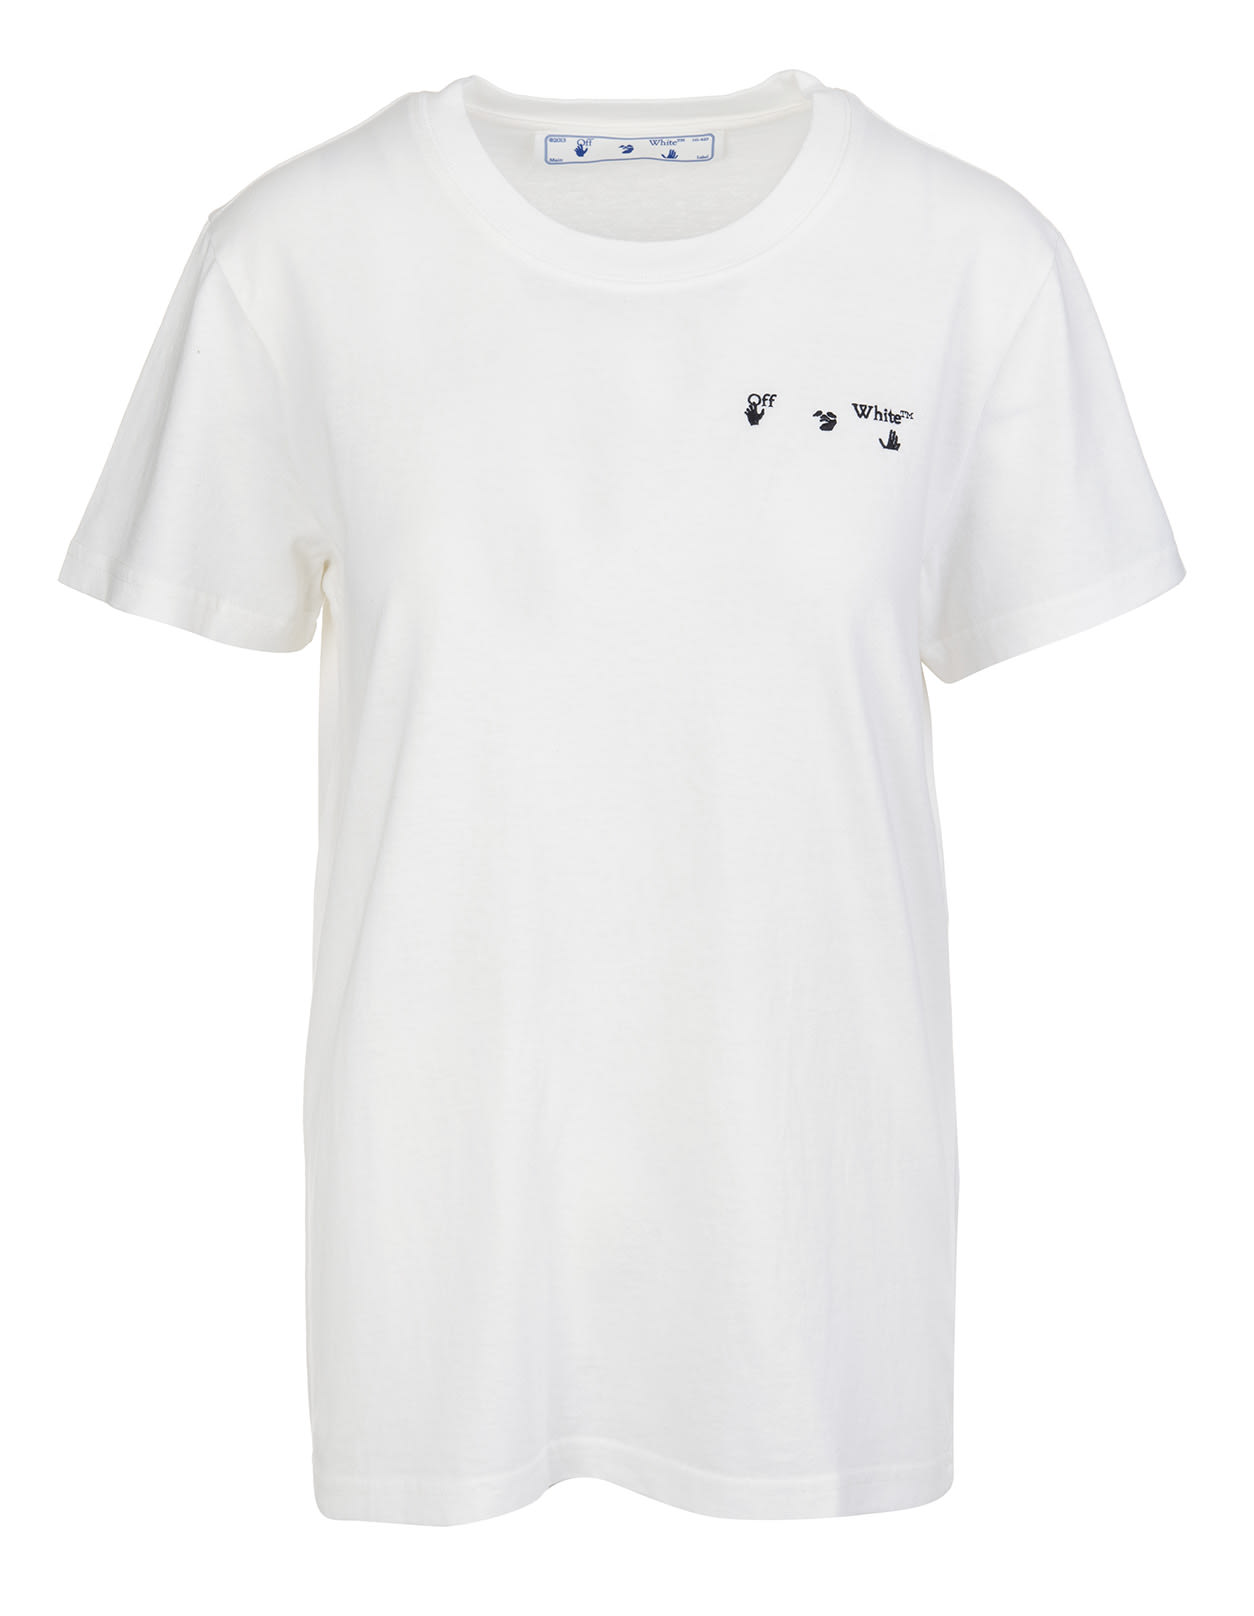 Off-White Liquid Arrows White Woman T-shirt